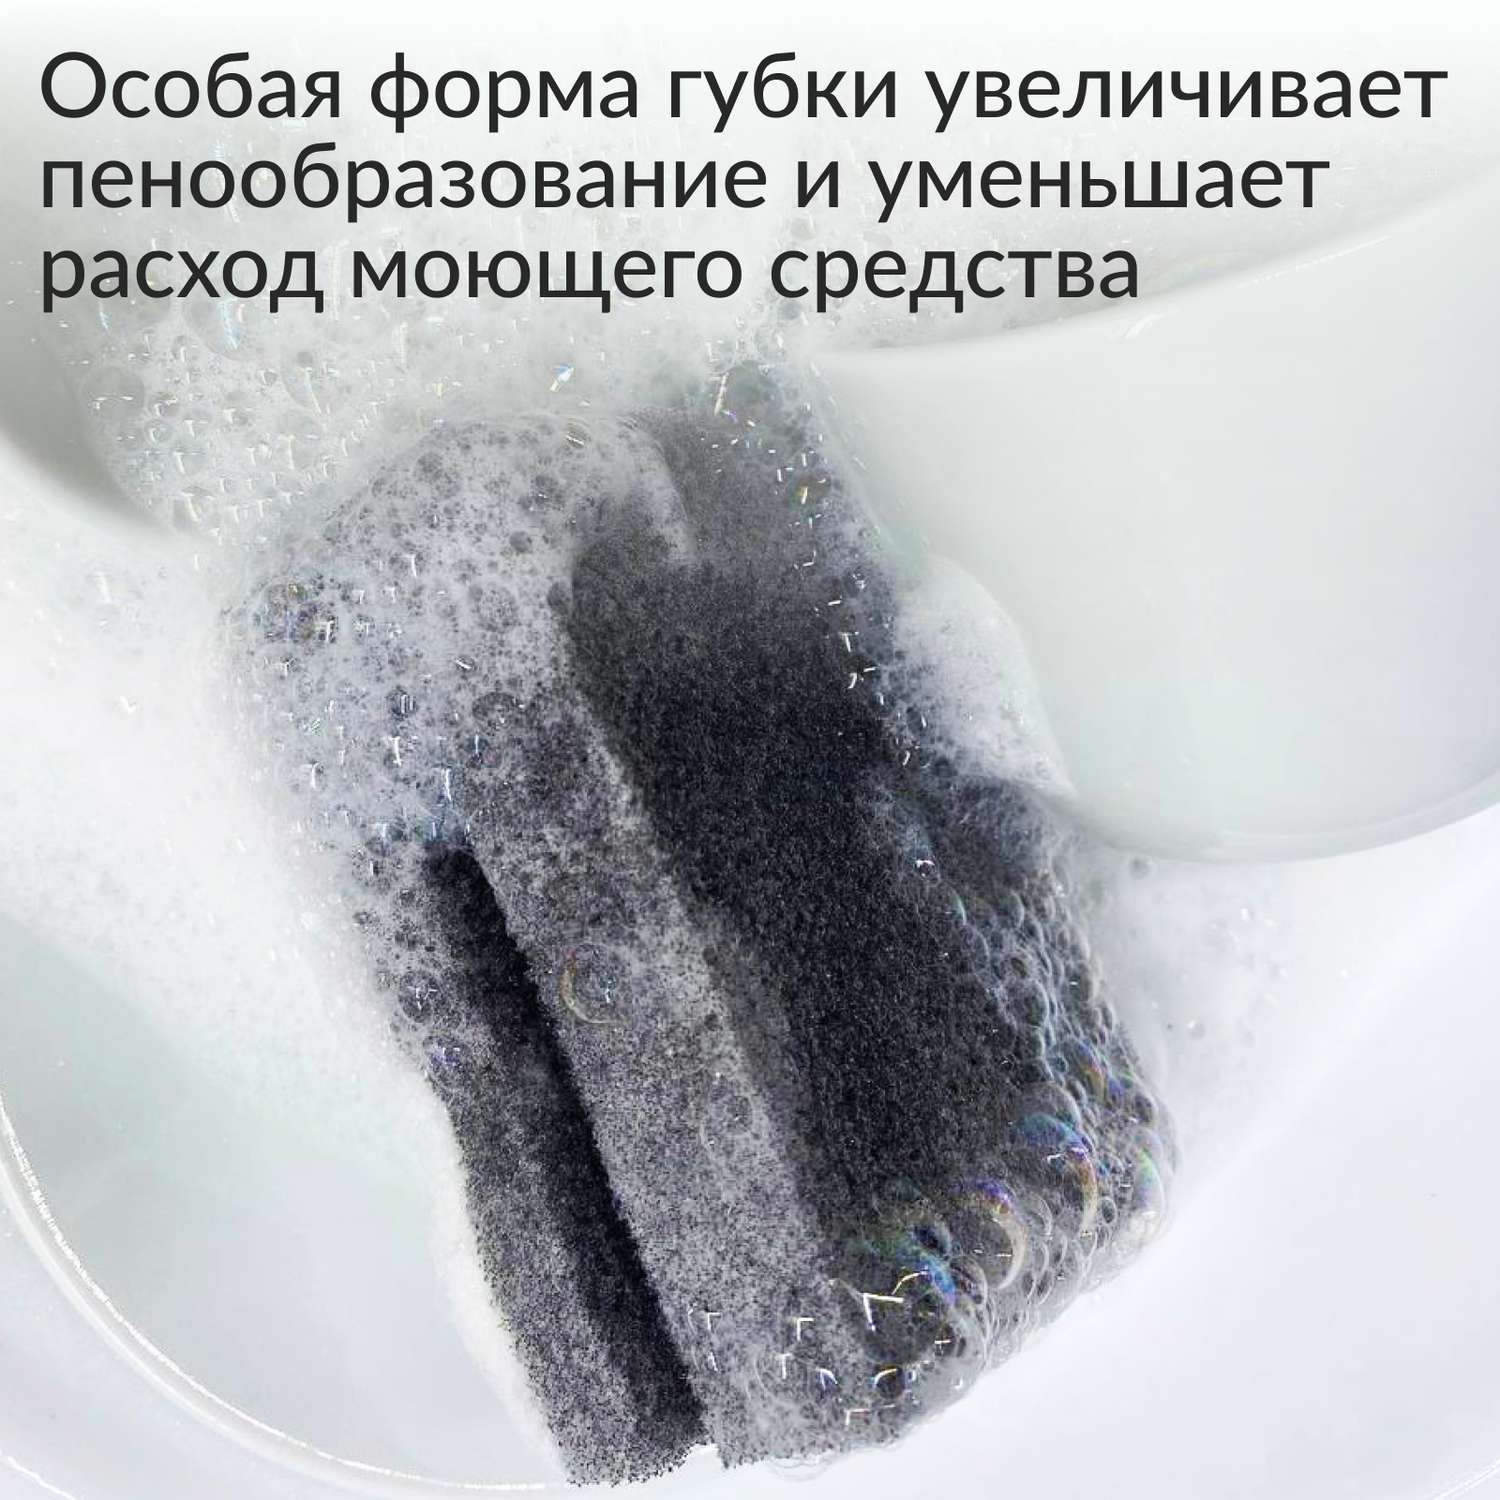 Губки для мытья посуды Jundo Kitchen Sponges Profi 5 шт поролон черные - фото 2